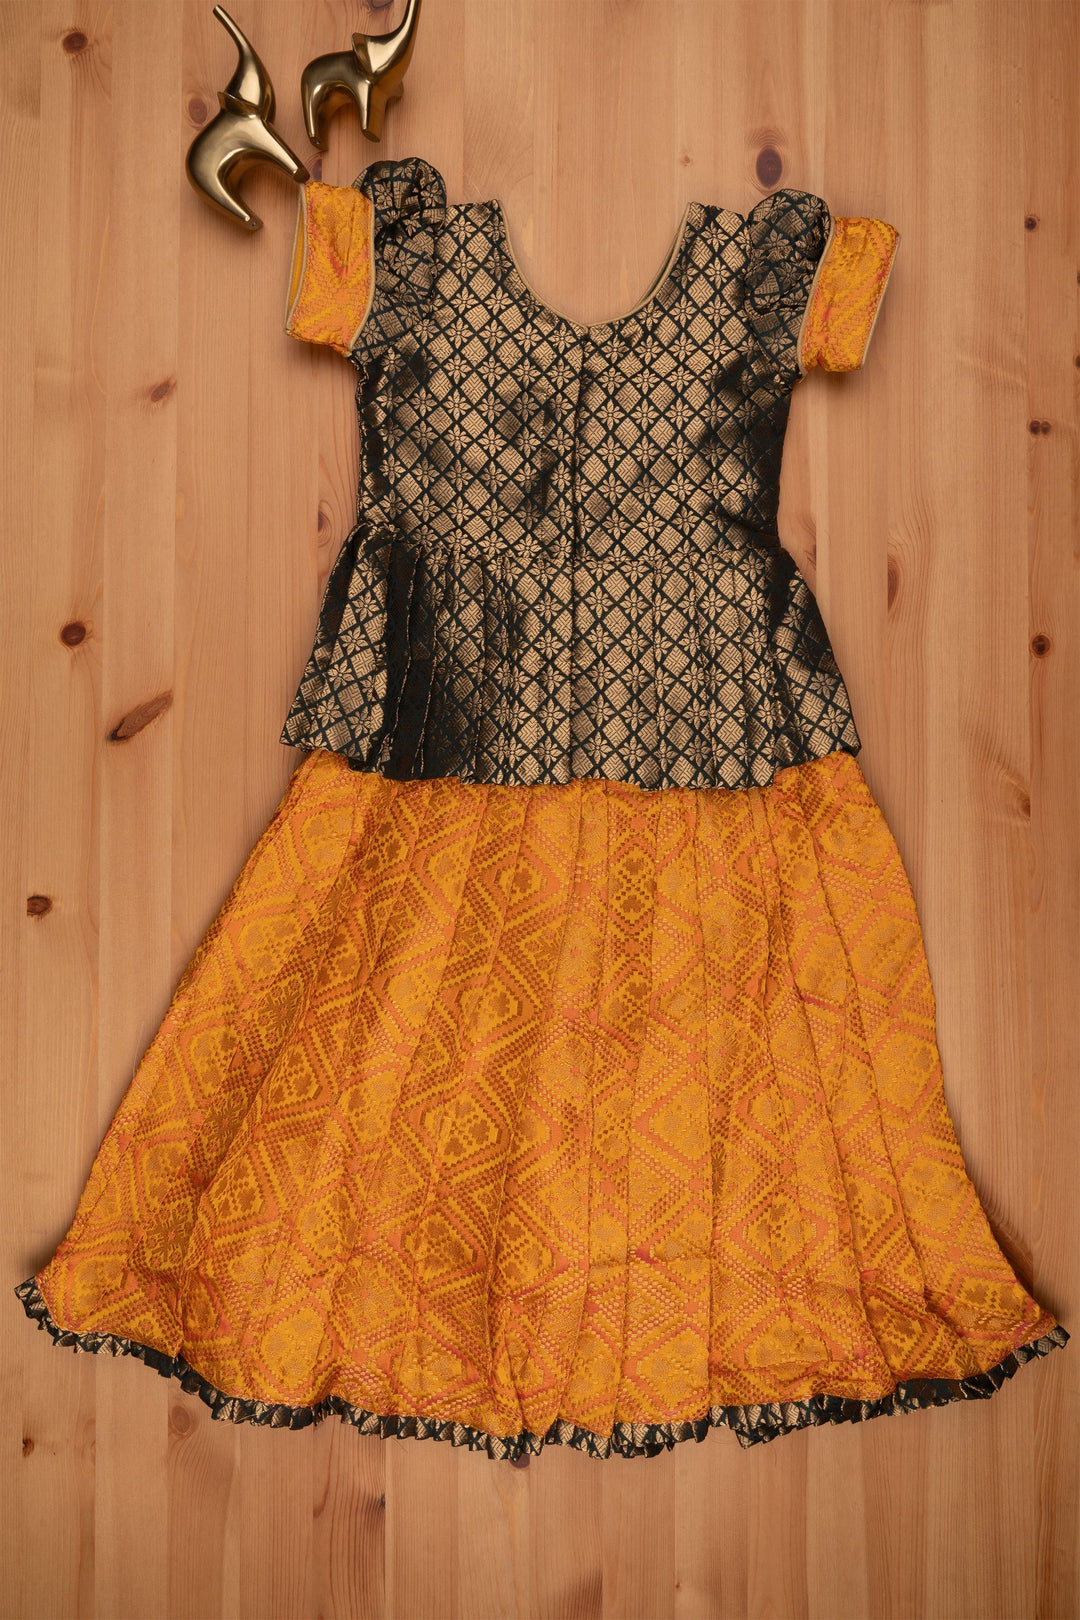 The Nesavu Pattu Pavadai Majestic Brocade Green Peplum Blouse paired with Patola Yellow Pattu Pavadai: Timeless South Indian Fashion Nesavu Pattu Pavadai with neck designs | Girls traditional silk dresses | The Nesavu